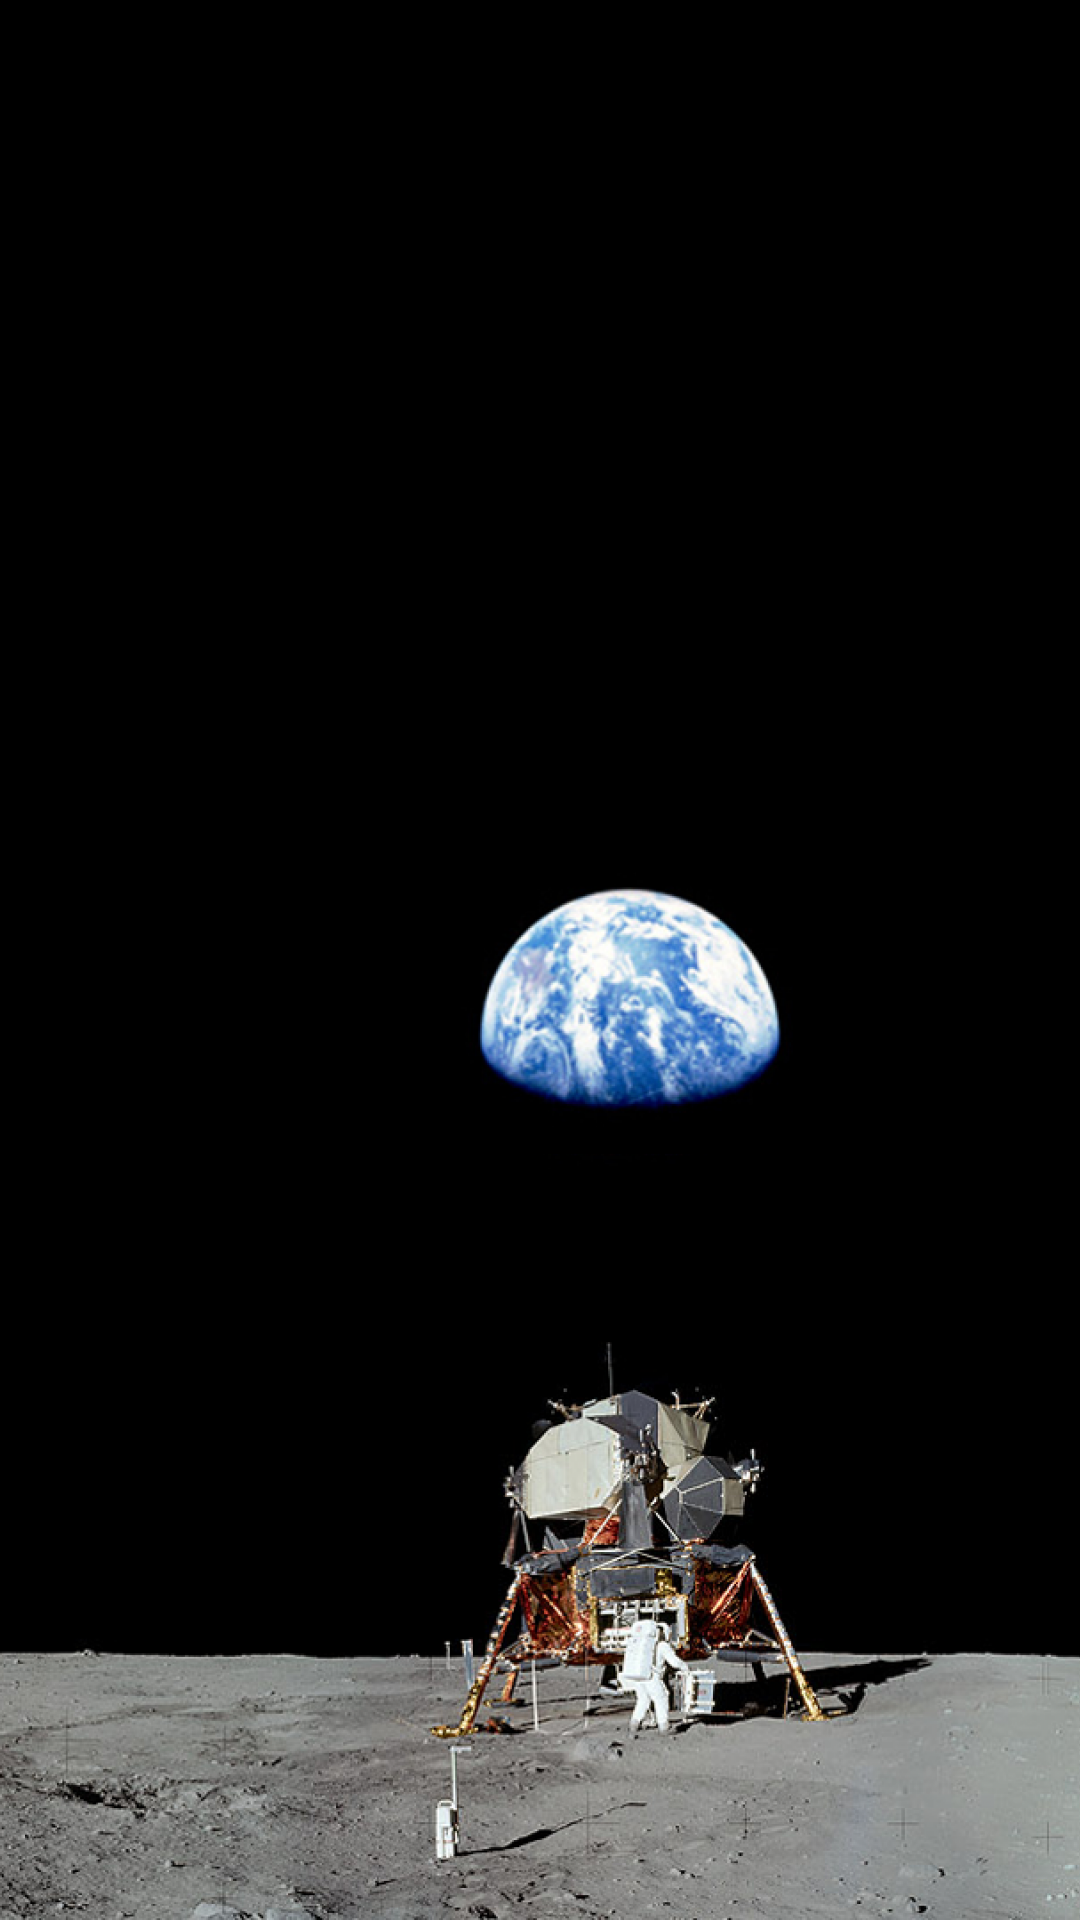 Astronaut iPhone Wallpaper